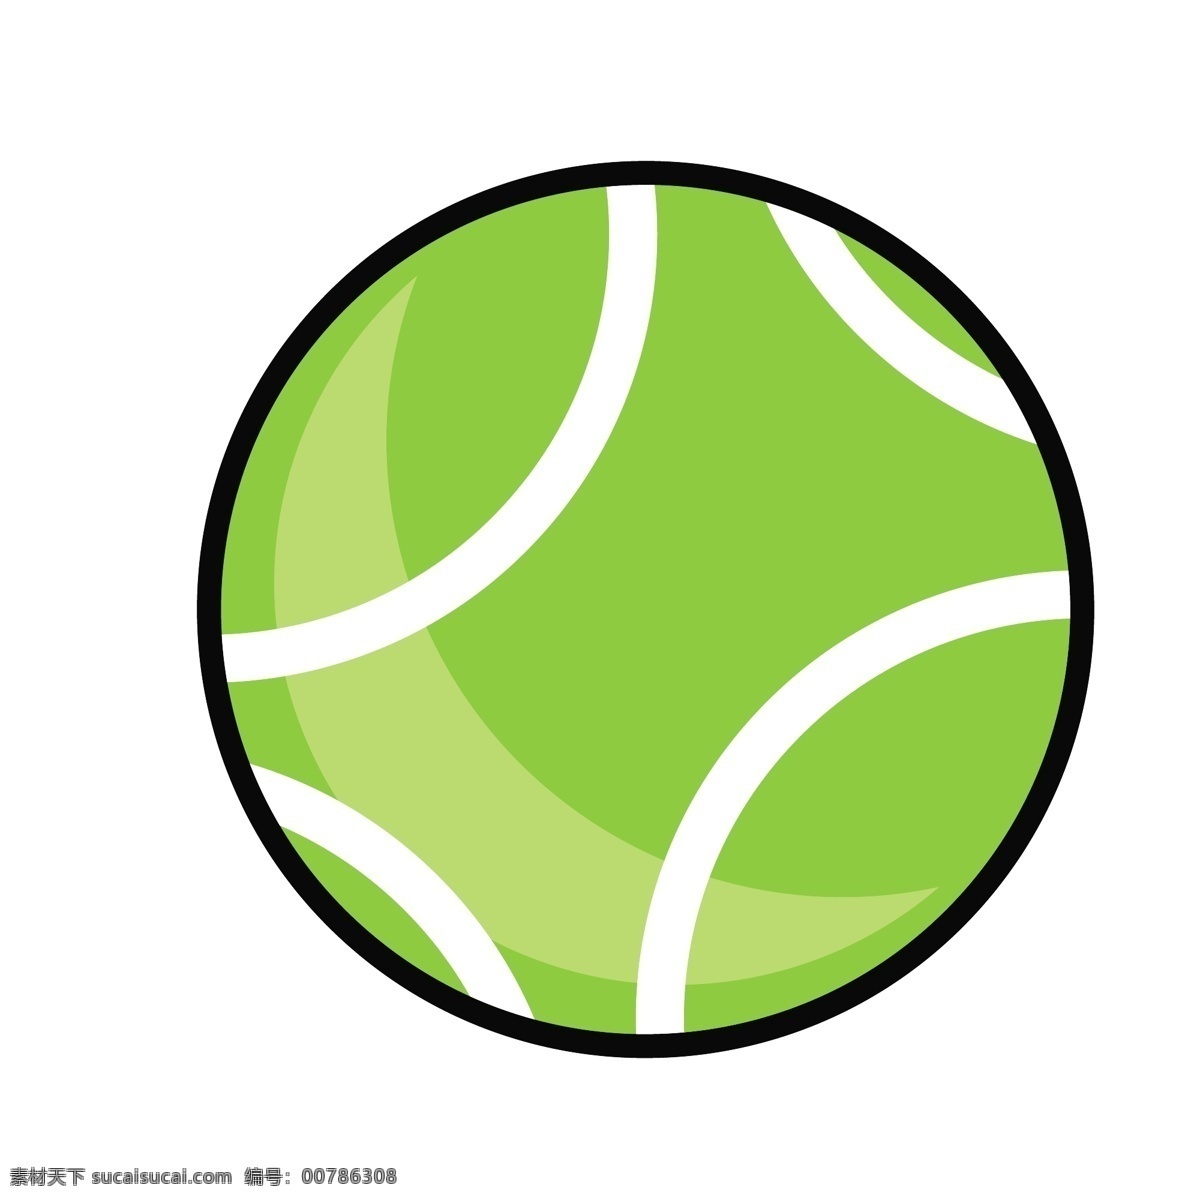 绿色 网球 运动 卡通 兴趣 爱好 图标 绿色图标 网球图标 运动图标 卡通图标 兴趣图标 爱好图标 千库原创 免抠图png